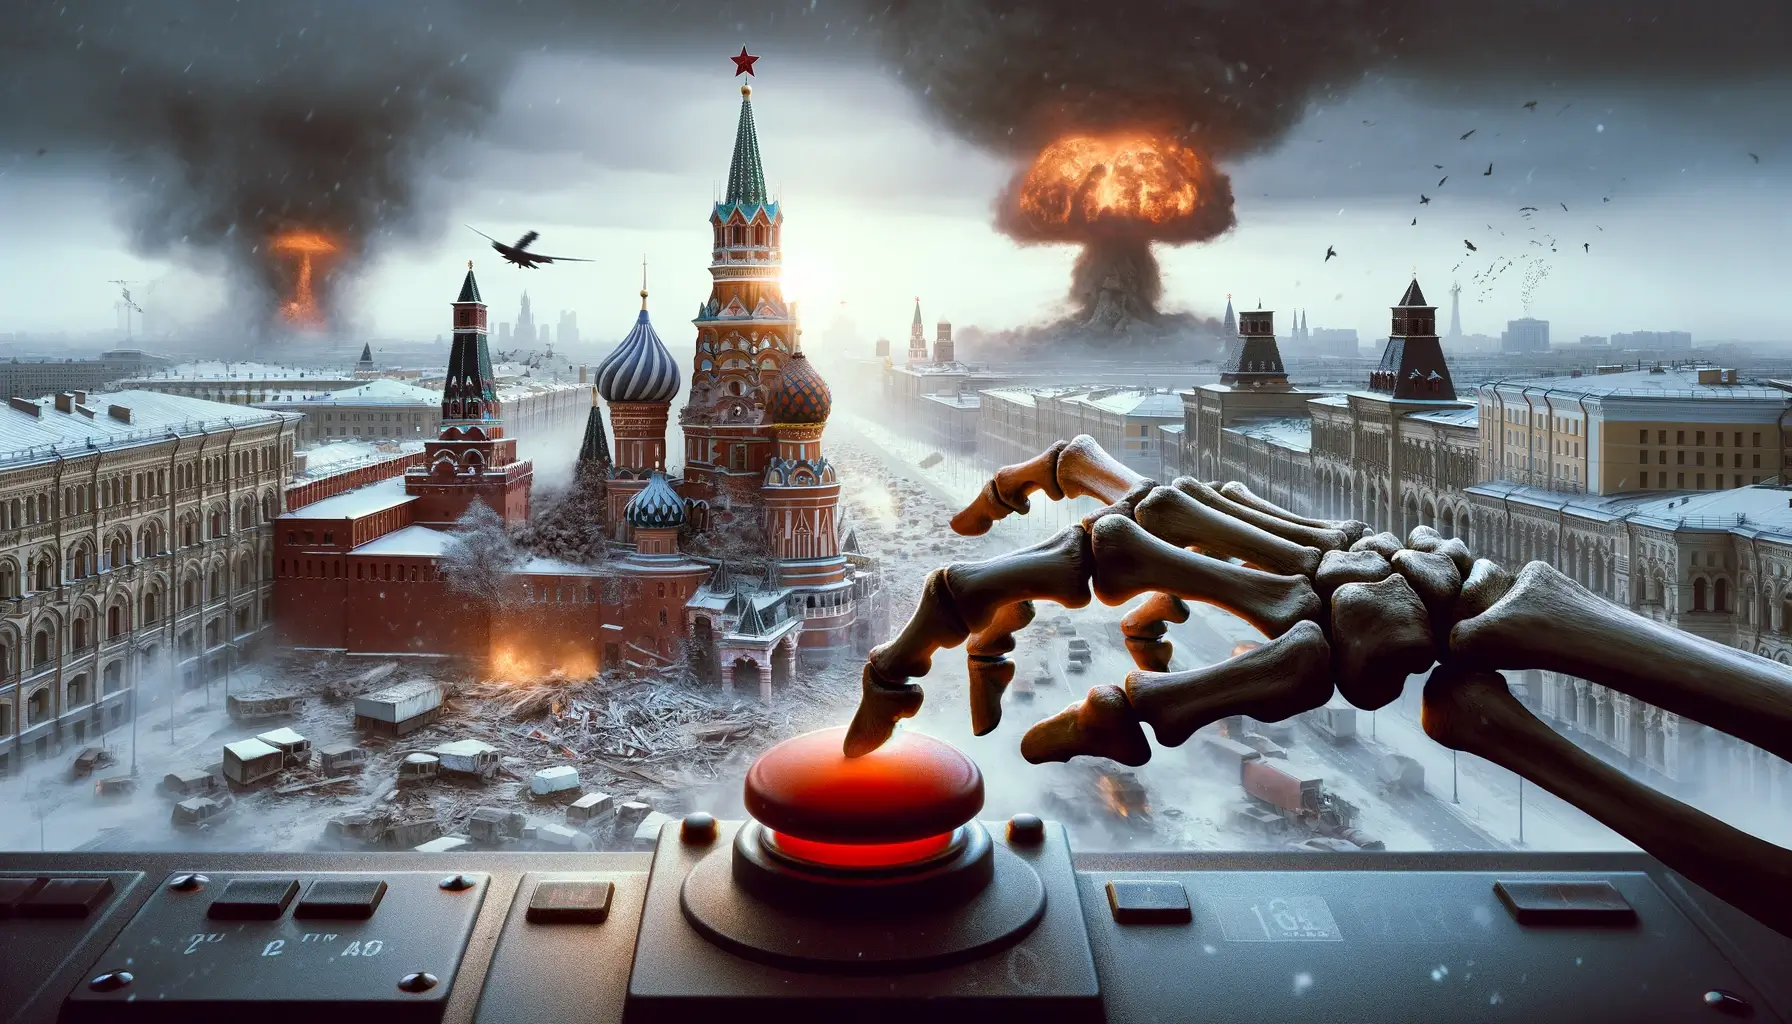 Perimeter - Russia's last argument in World War 3